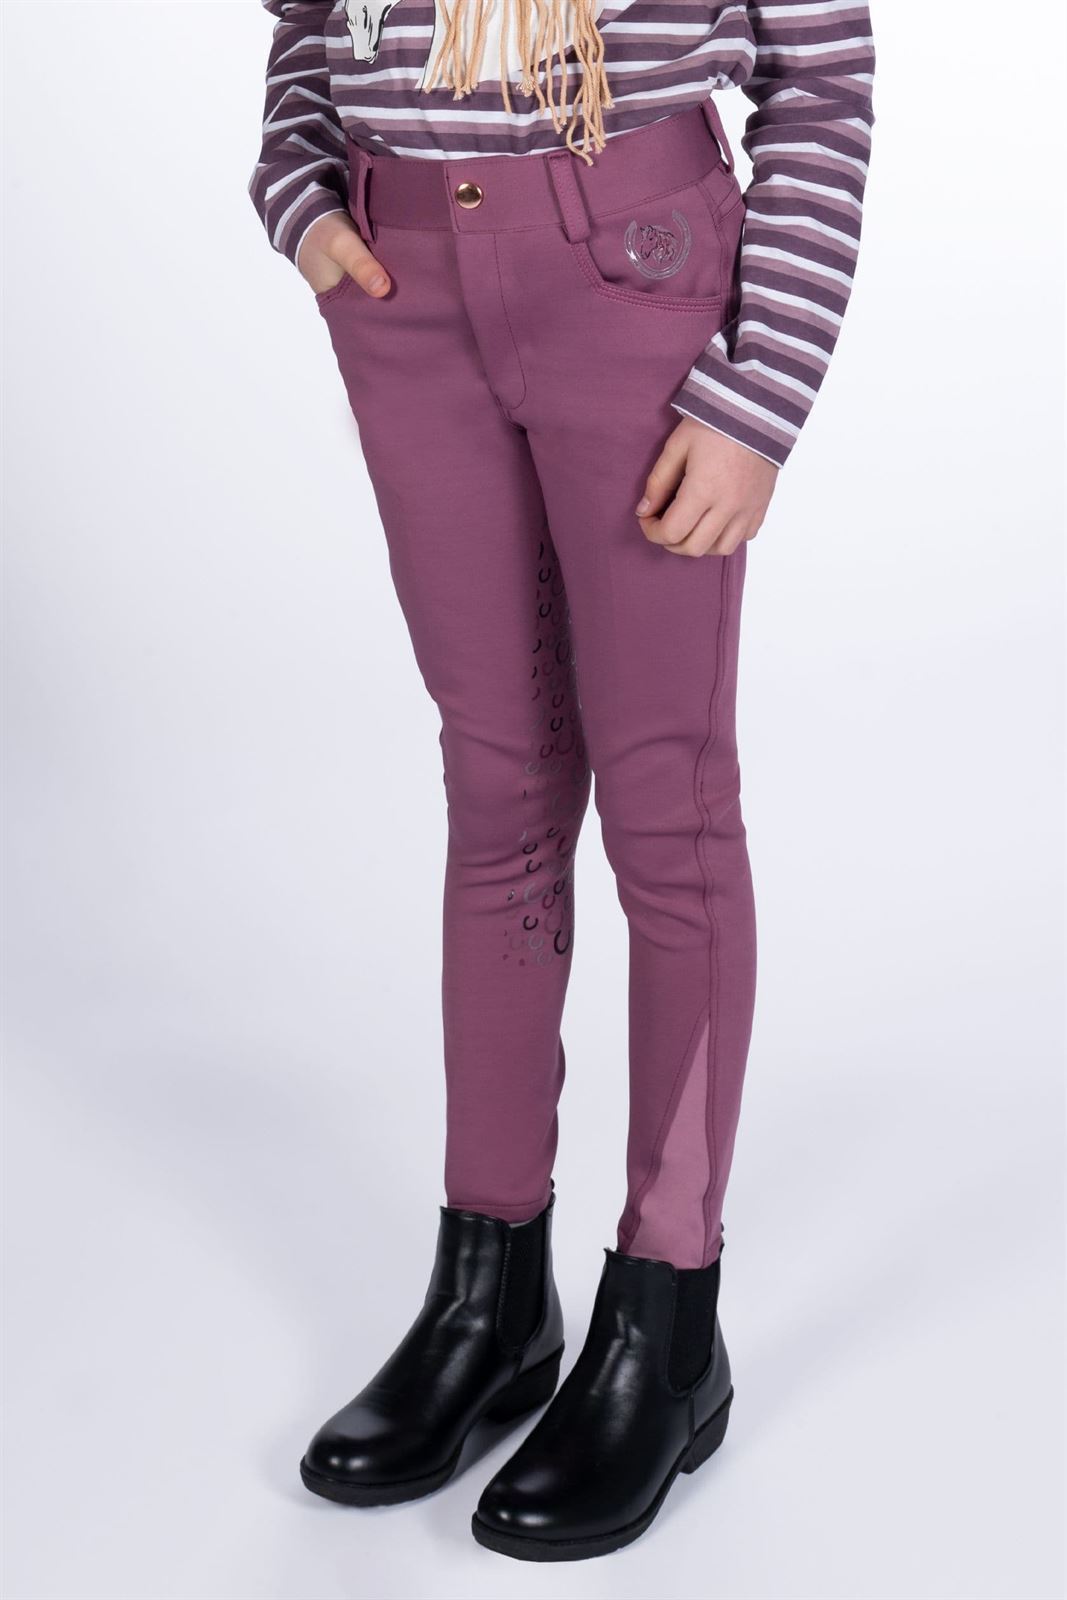 Pantalón niña HKM Sports Equipment Alva culera de grip, color lila oscuro - Imagen 1